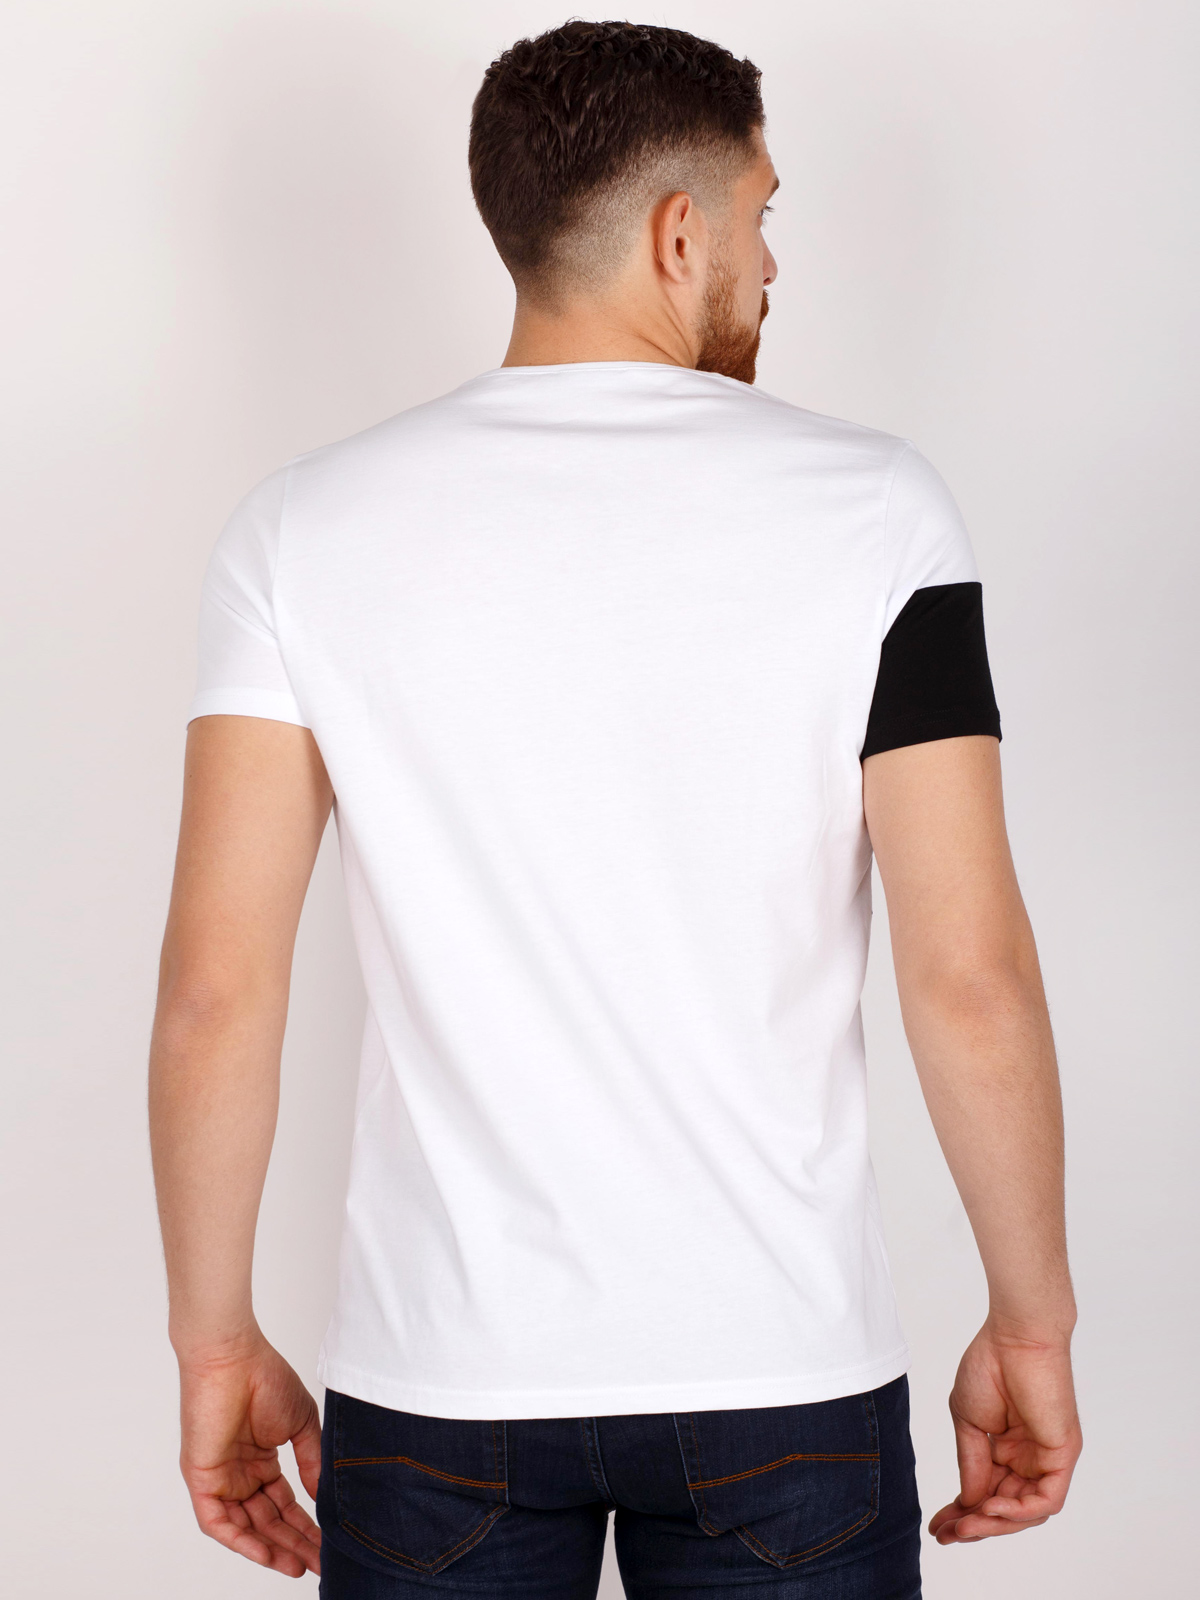 White tshirt with black print - 96413 € 16.31 img3